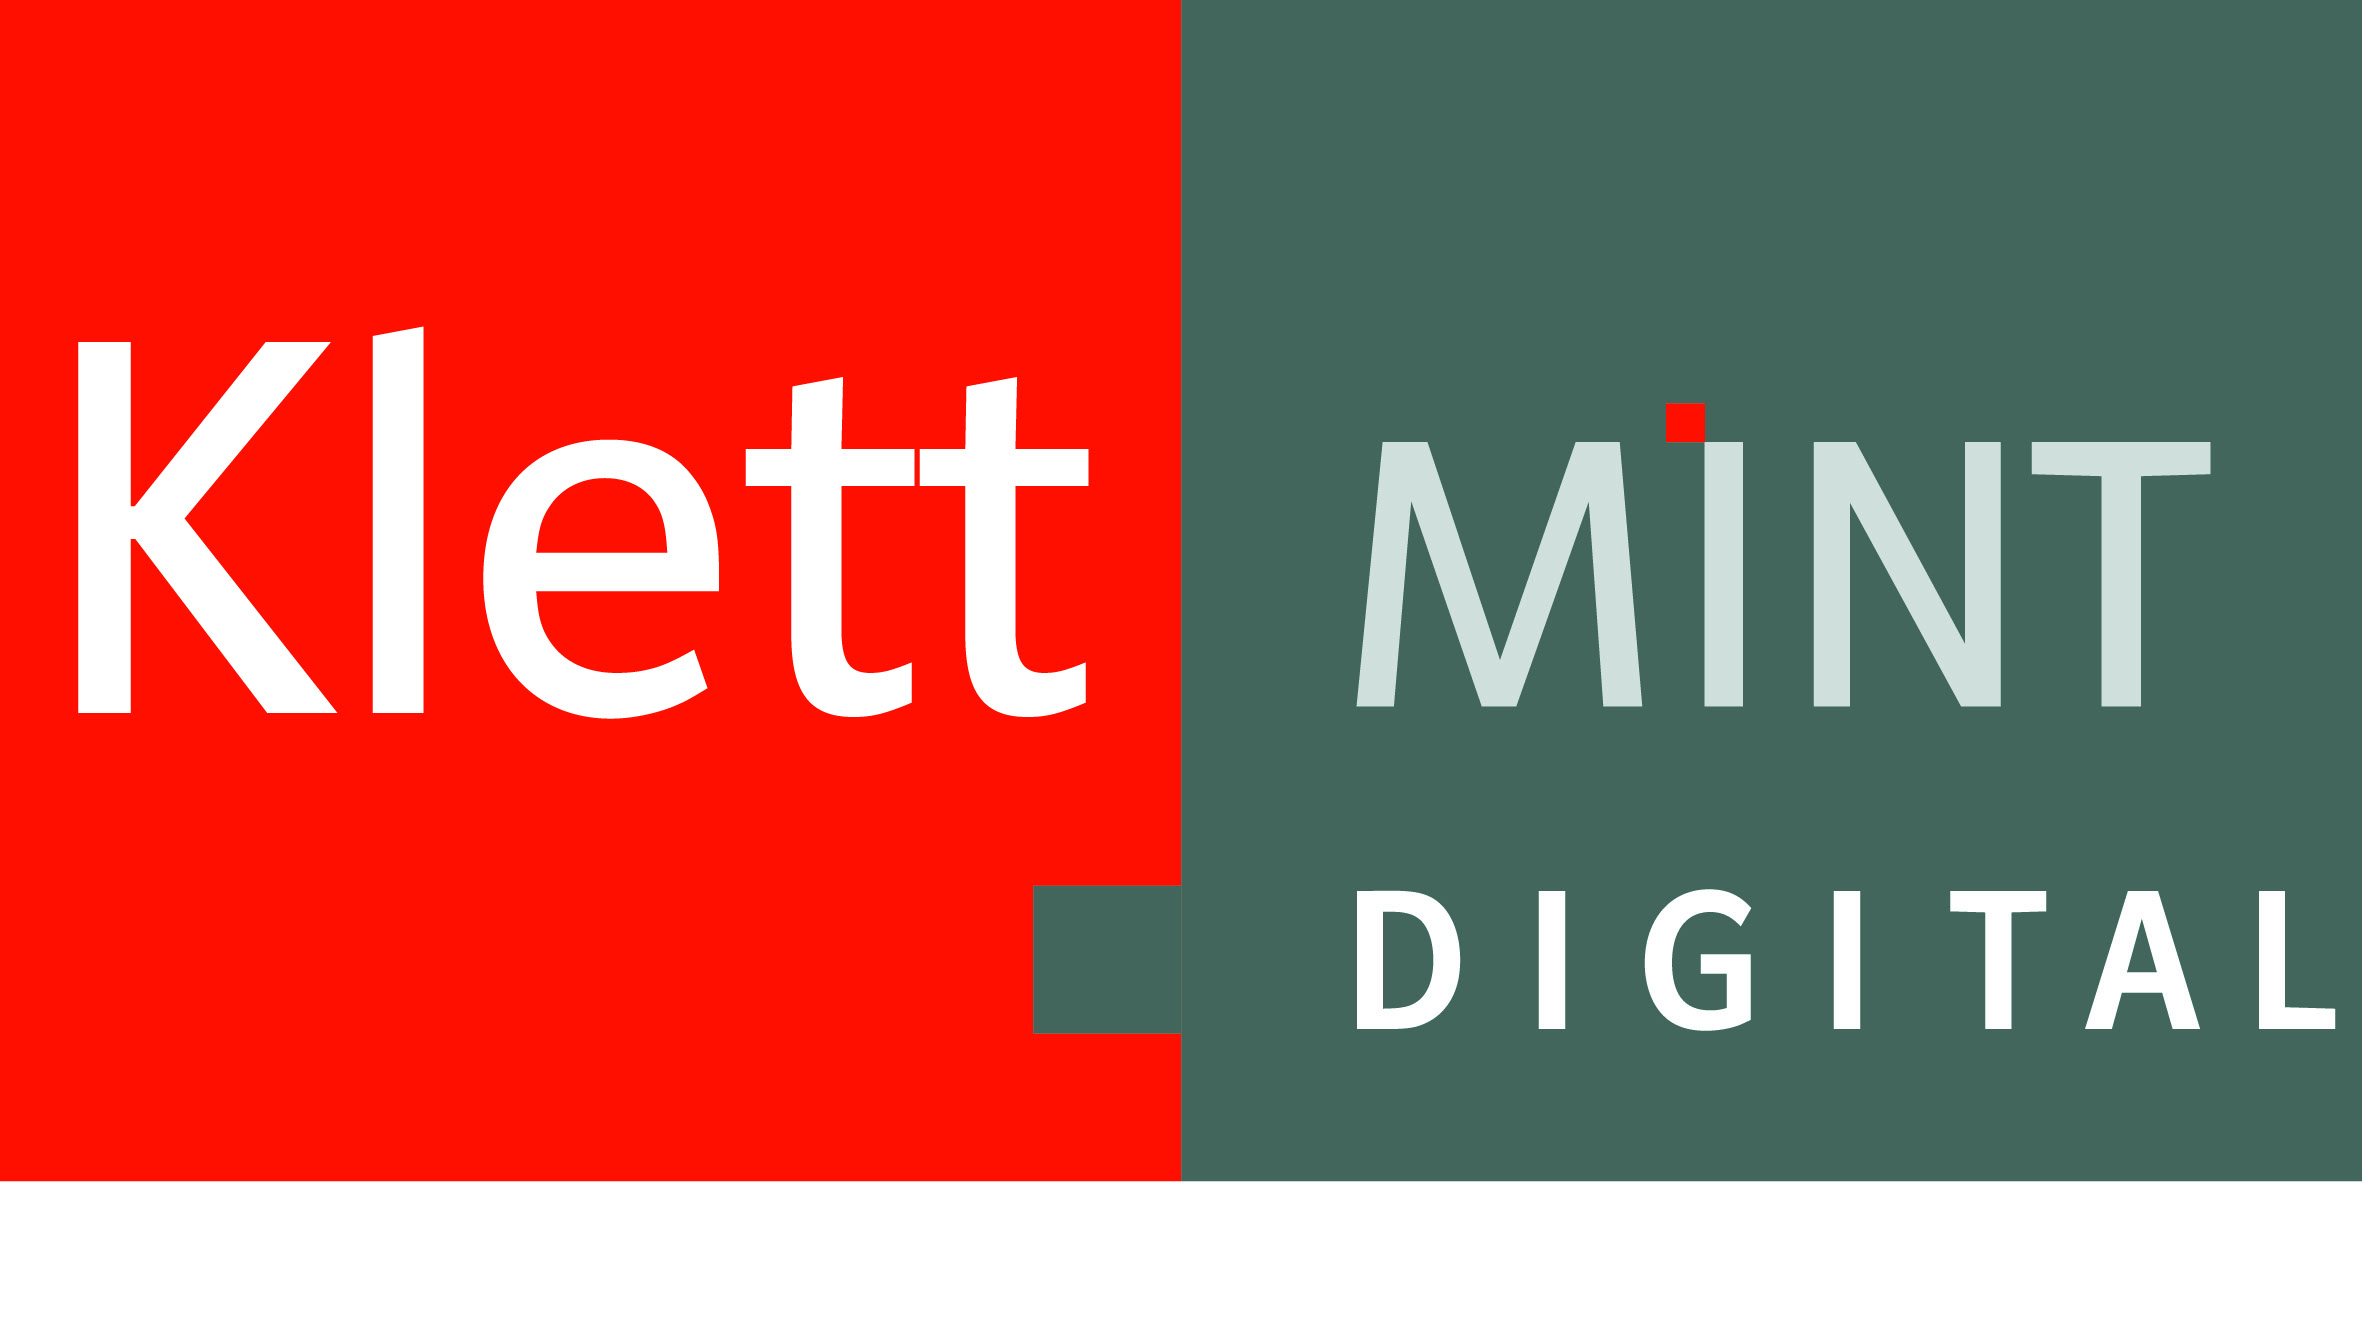 Klett MINT Digital Webinare von Saskia Ebel | Die Digitalisierung als Teil des Schulentwicklungsprozesses |Integration des Kollegiums in die Digitalisierungsstrategie